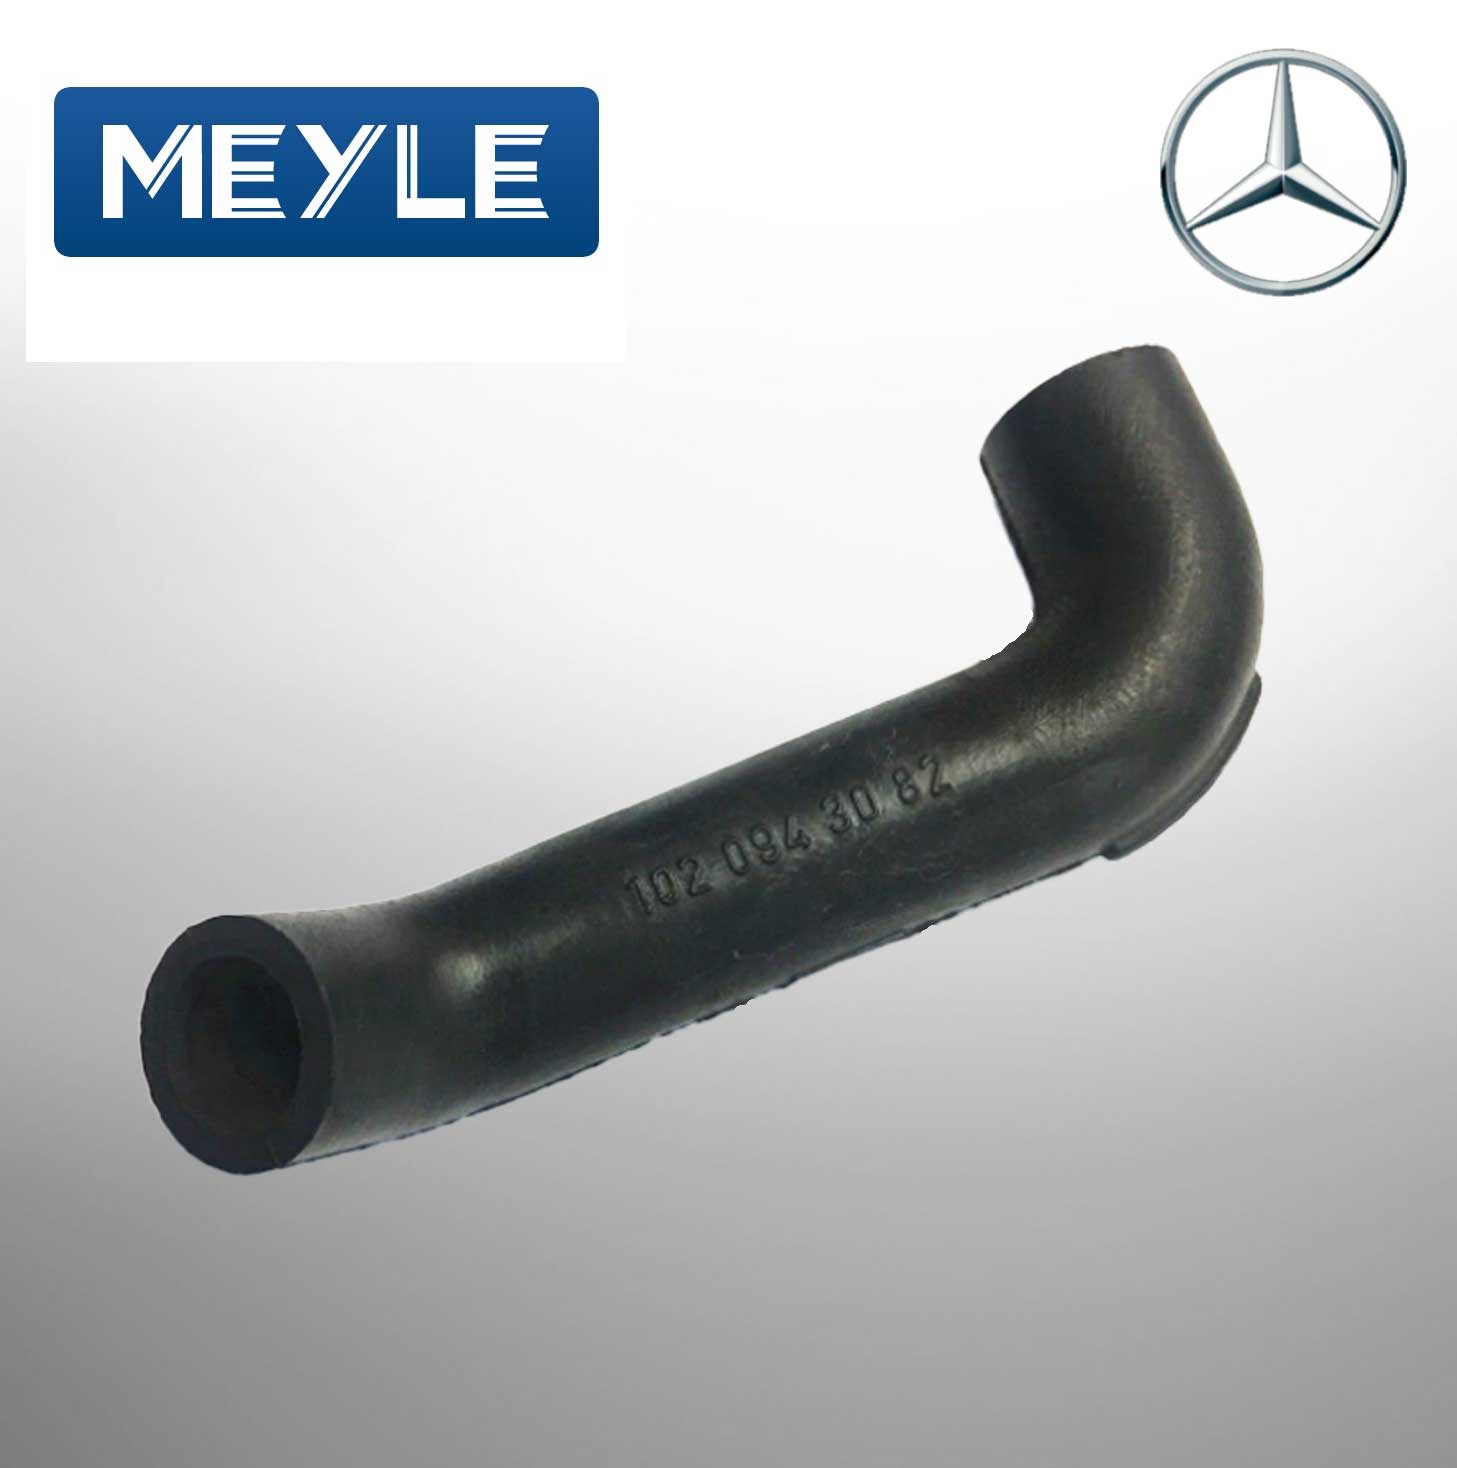 MEYLE AIR HOSE FOR Mercedes Benz 1020943082